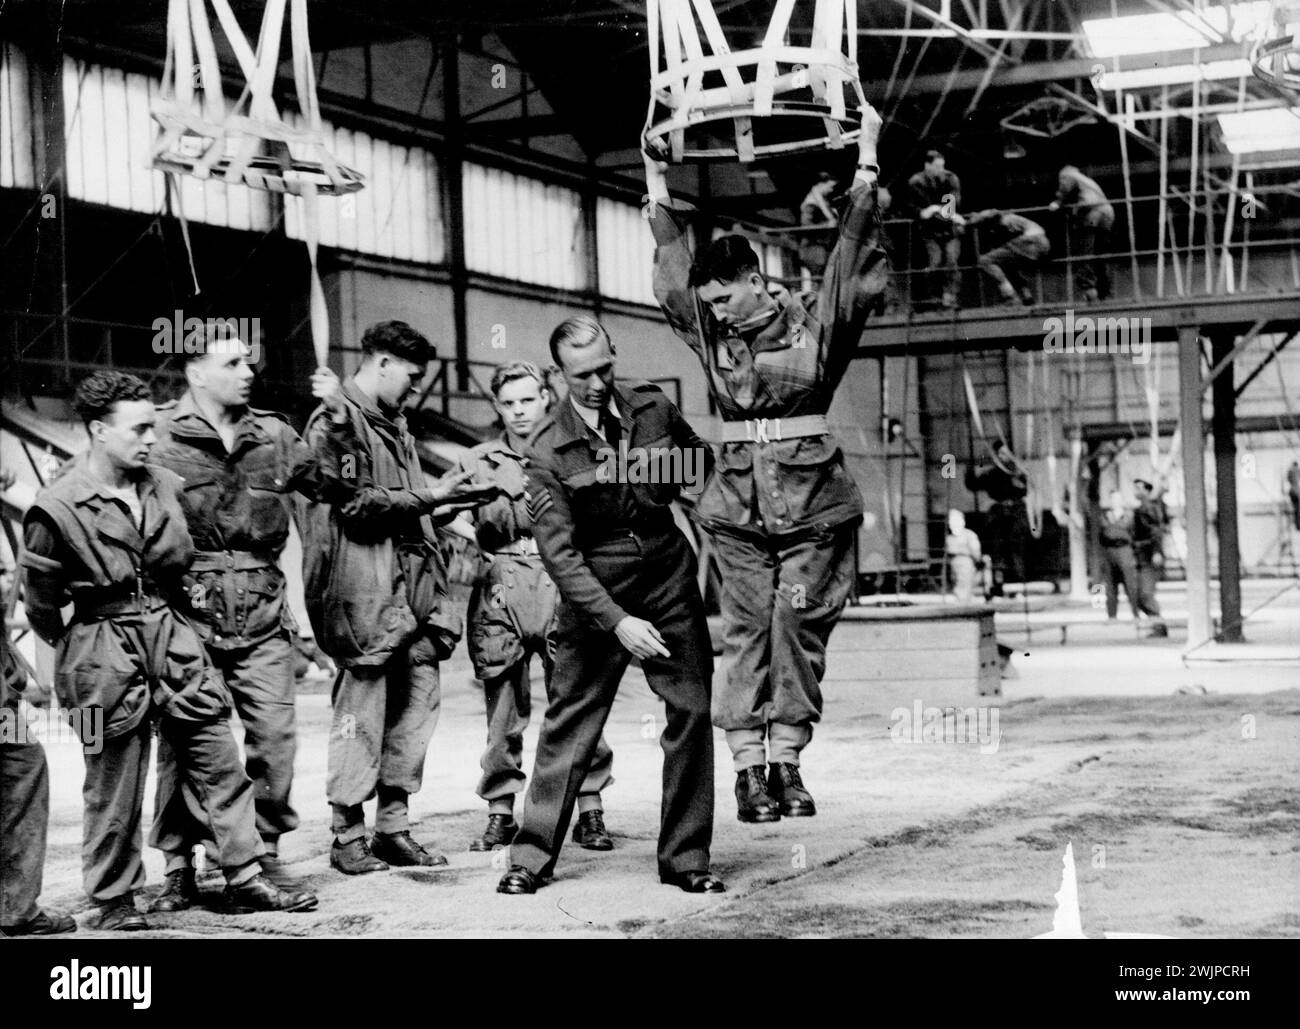 Parachutistes en formation à la R.A.F. Parachute School, Upper Heyford, Oxfordshire. Cette école de parachutisme R.A.F., qui forme toutes les troupes aéroportées britanniques, a maintenant effectué 500 000 sauts. Depuis que l'école a été formée en 1940 améliorer la technique et l'équipement des hommes ont transformé ce qui était considéré à l'origine comme une expérience plutôt dangereuse et effrayante en quelque chose de commun. Pendant les années de pointe pour la formation des parachutistes, 1943-45, le nombre de sauts à l'école était en moyenne d'environ 110 000 par an. Jusqu'à la fin de 1945, trois accidents ont été mortels sur 8 800 ju ... Banque D'Images